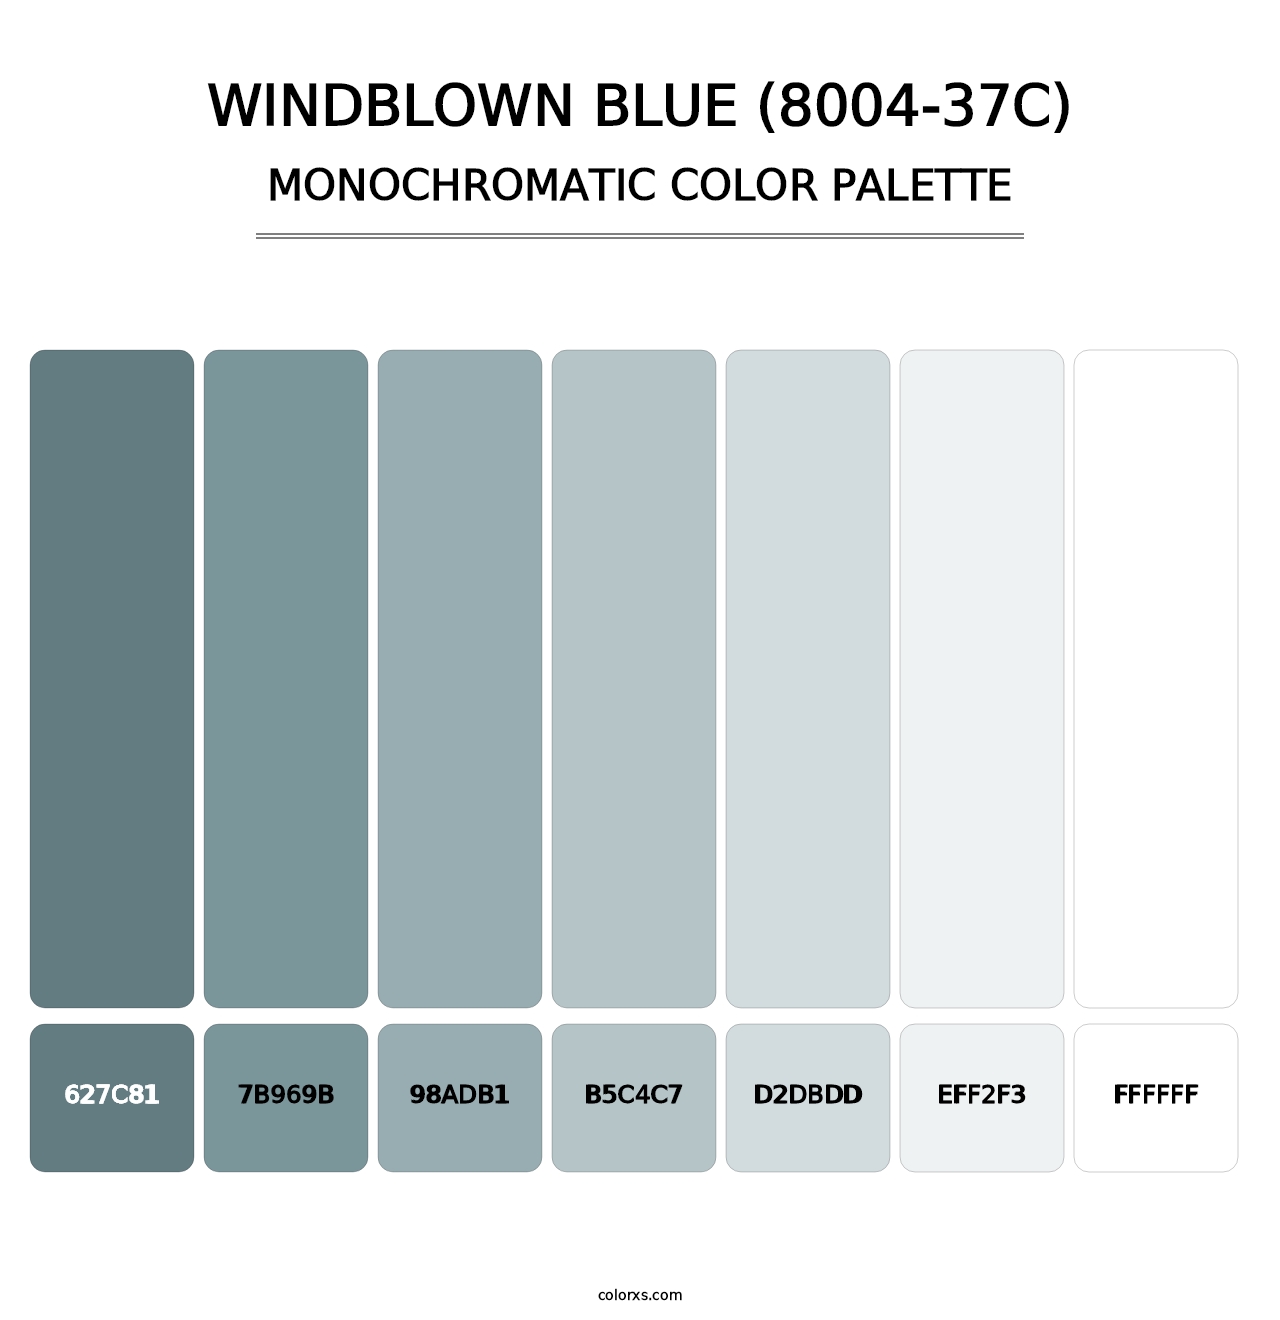 Windblown Blue (8004-37C) - Monochromatic Color Palette